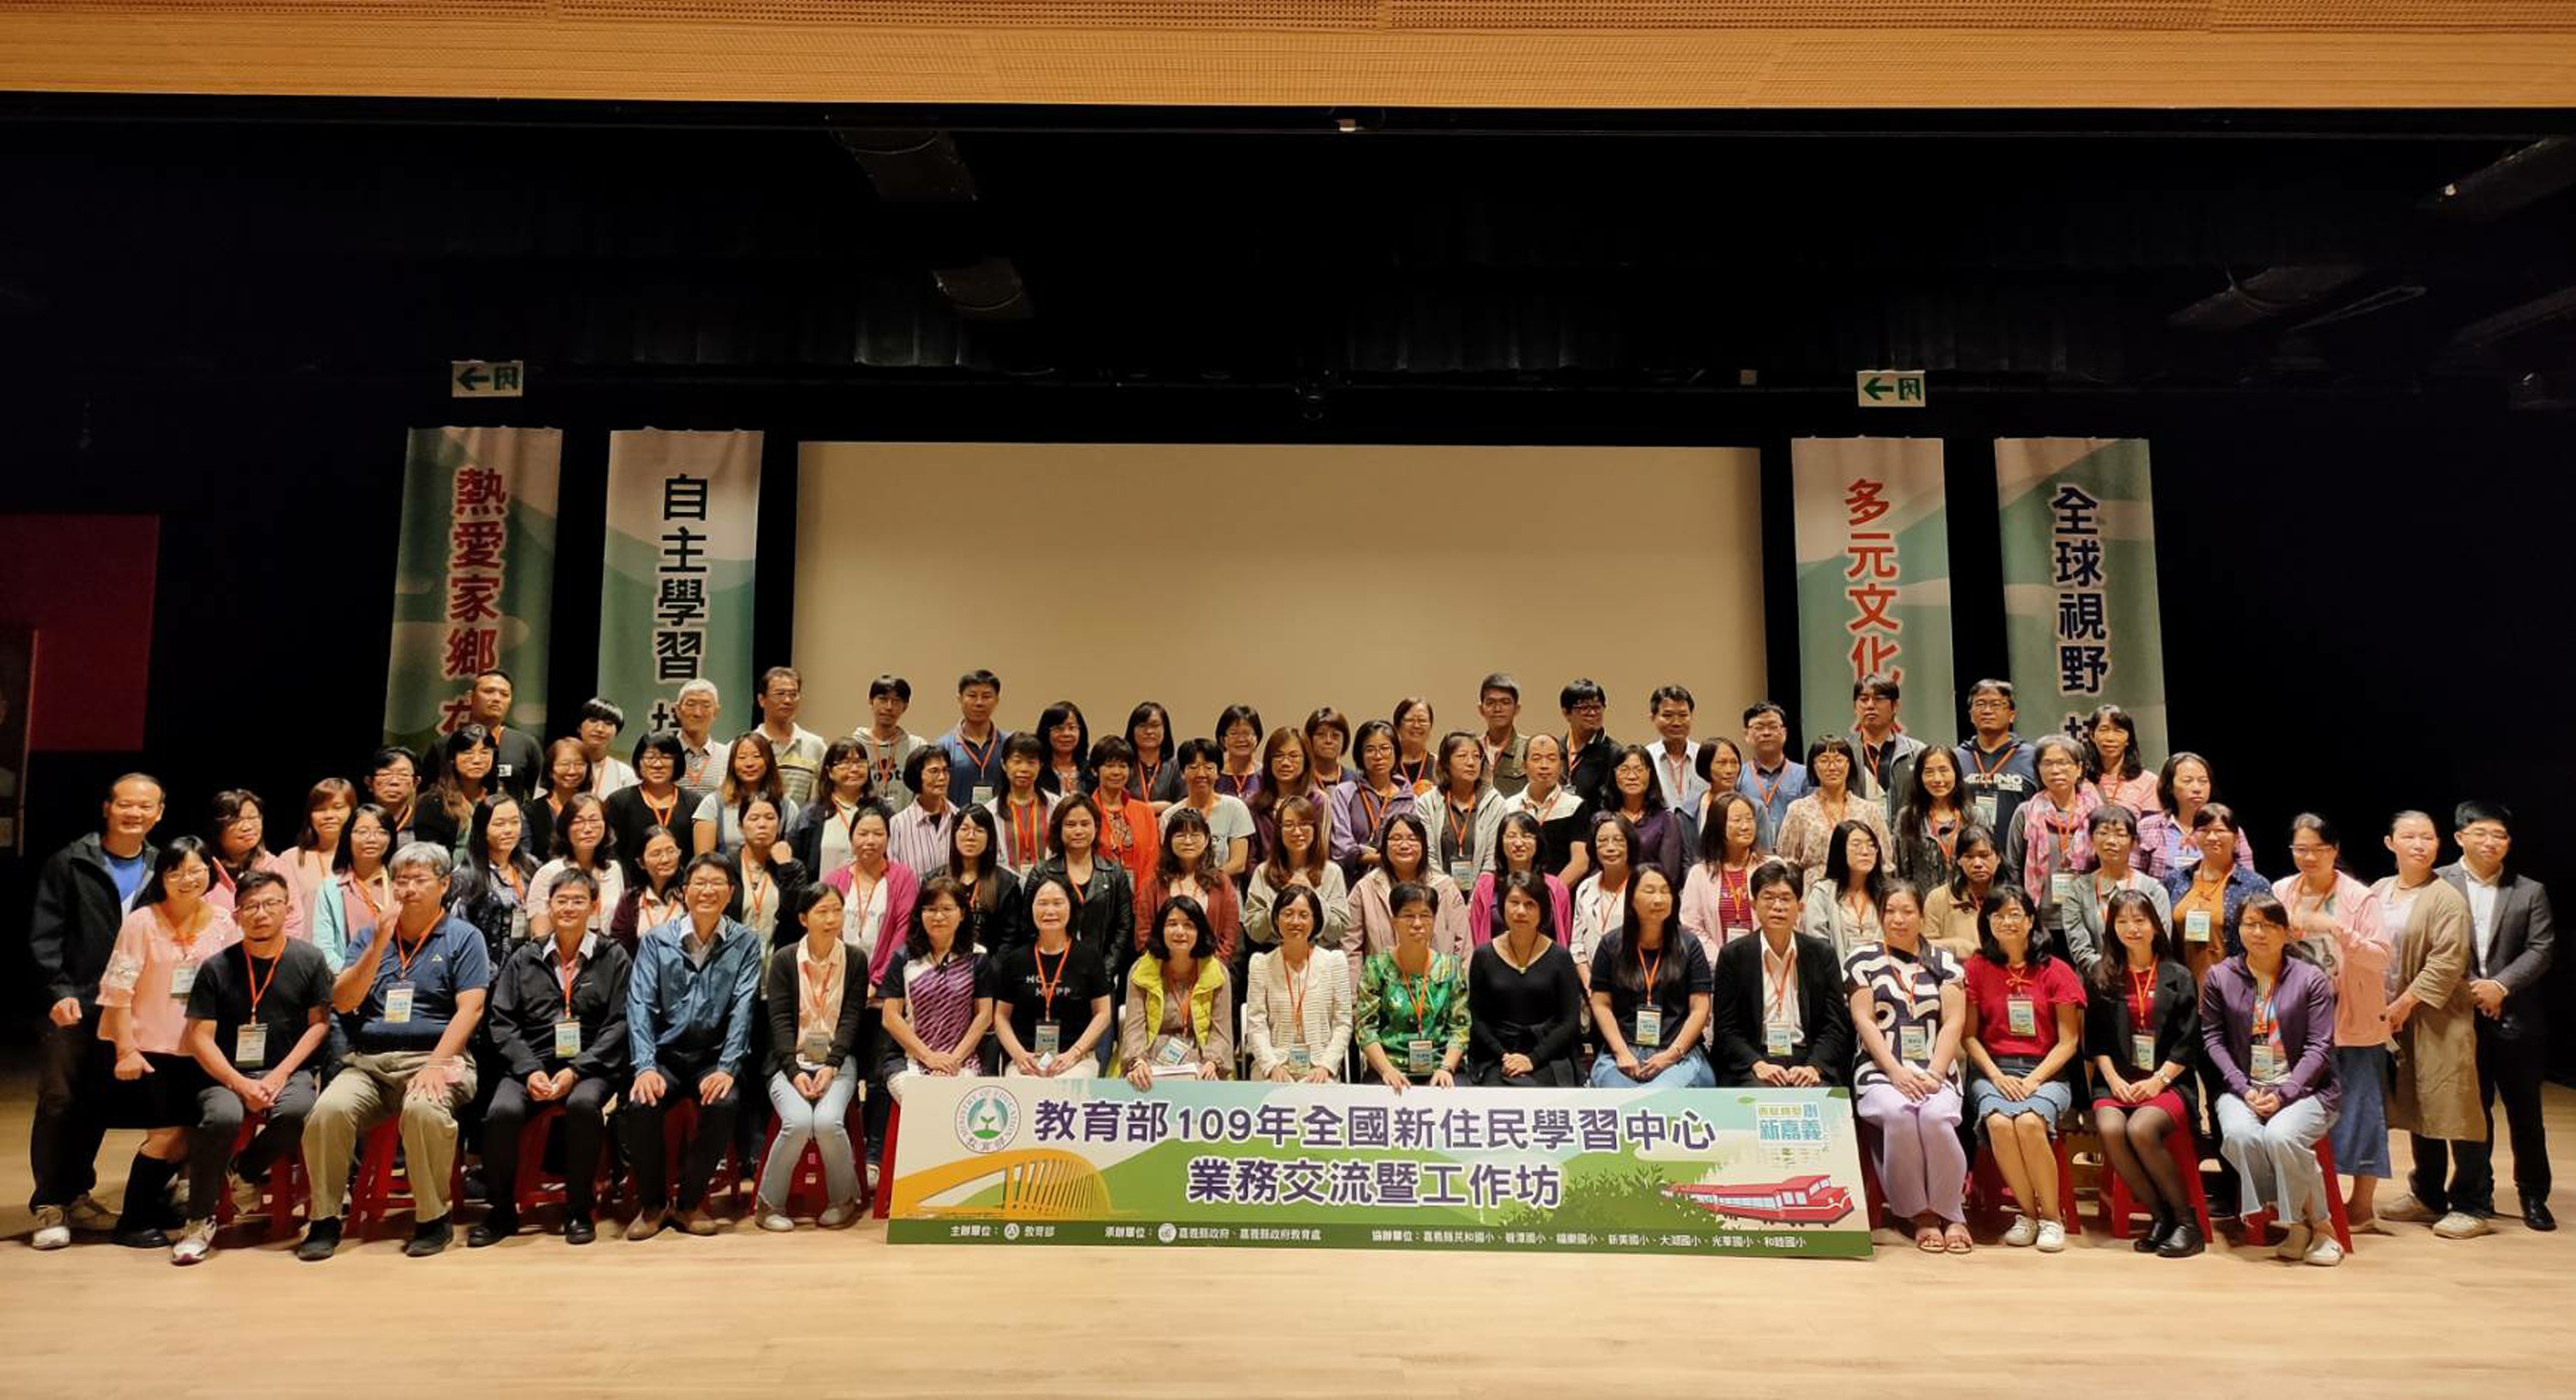 在臺灣新住民超過56萬人 教育部終身學習攜手地方共榮